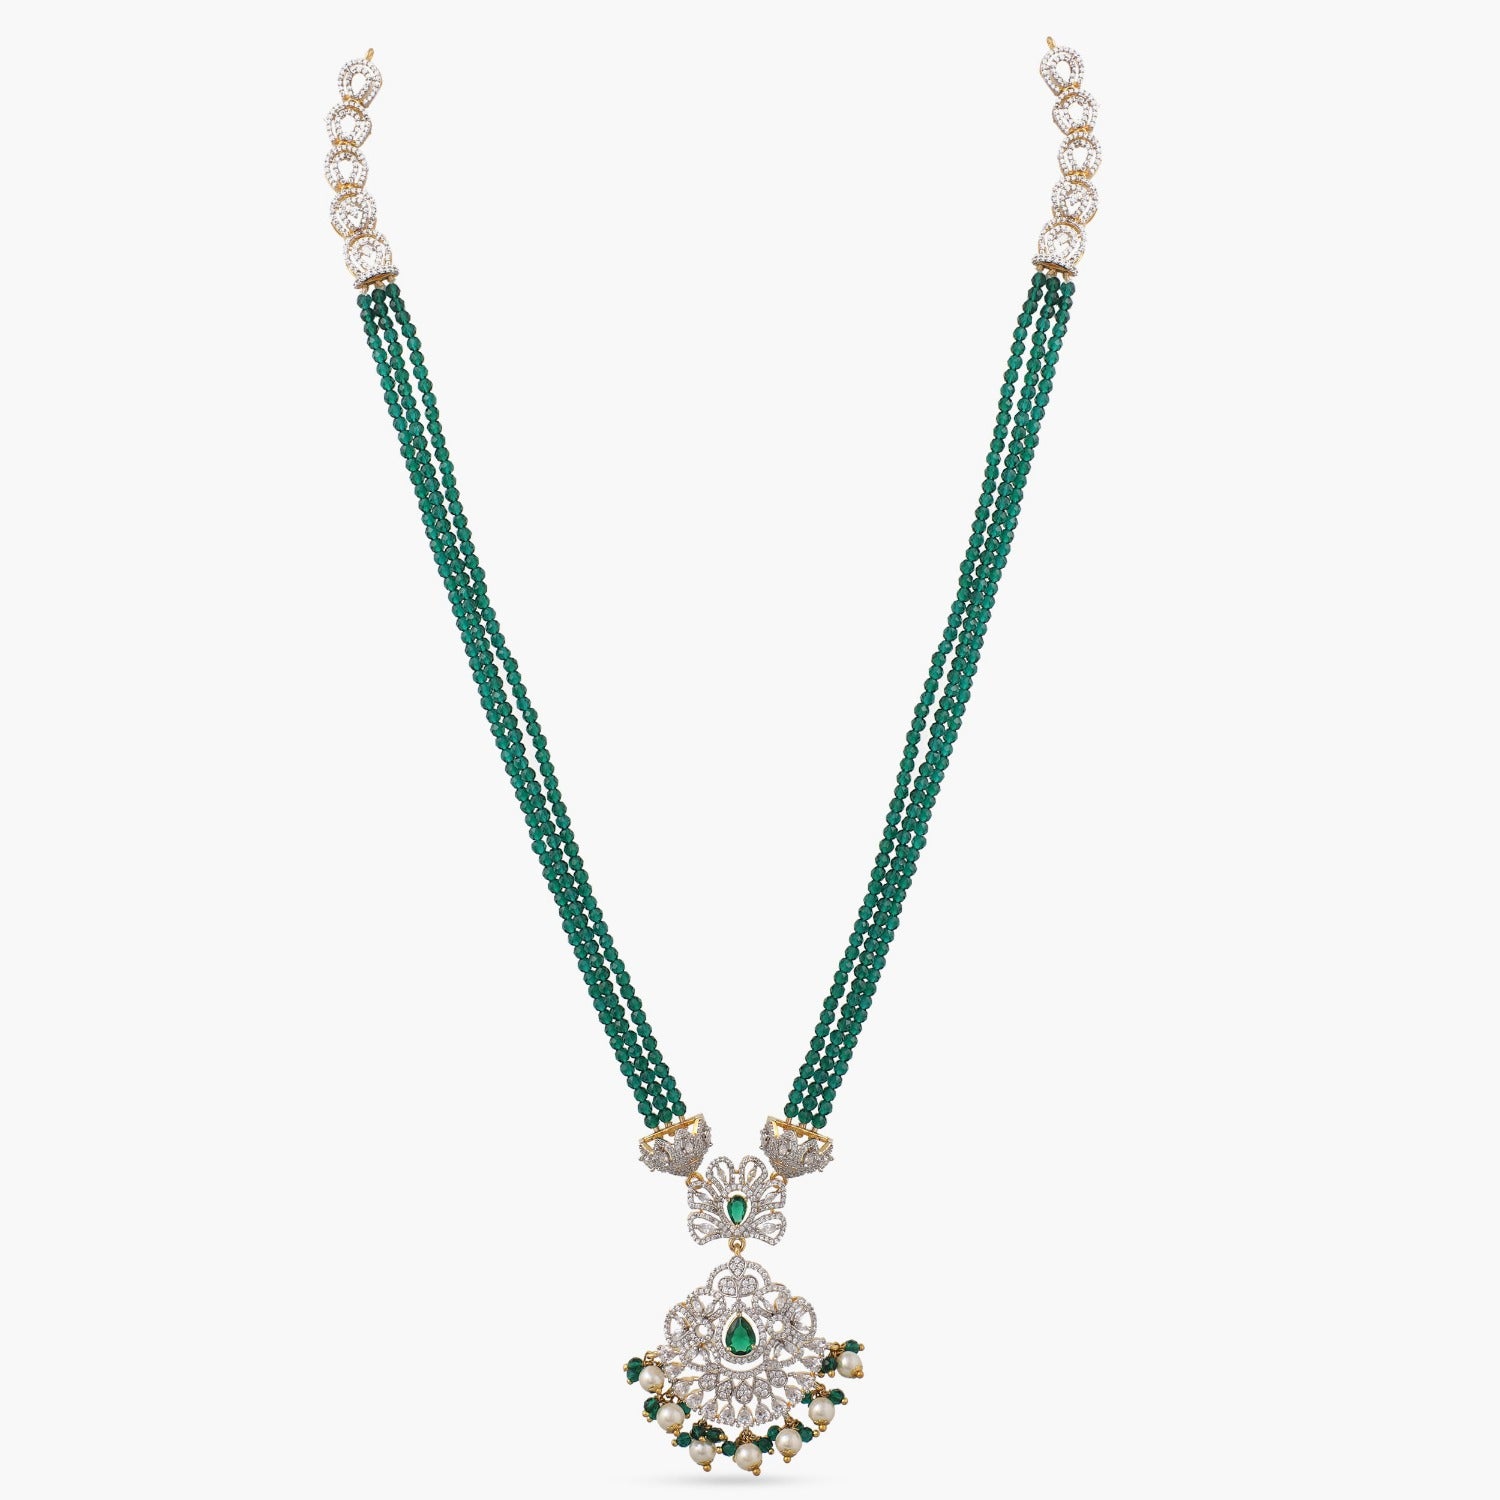 PInk CZ Pendant Necklace| Indian Jewelry |Statement Jewelry |Pakistani  Jewelry | Raani Haar | American Diamond Necklace | Wedding Jewelry..